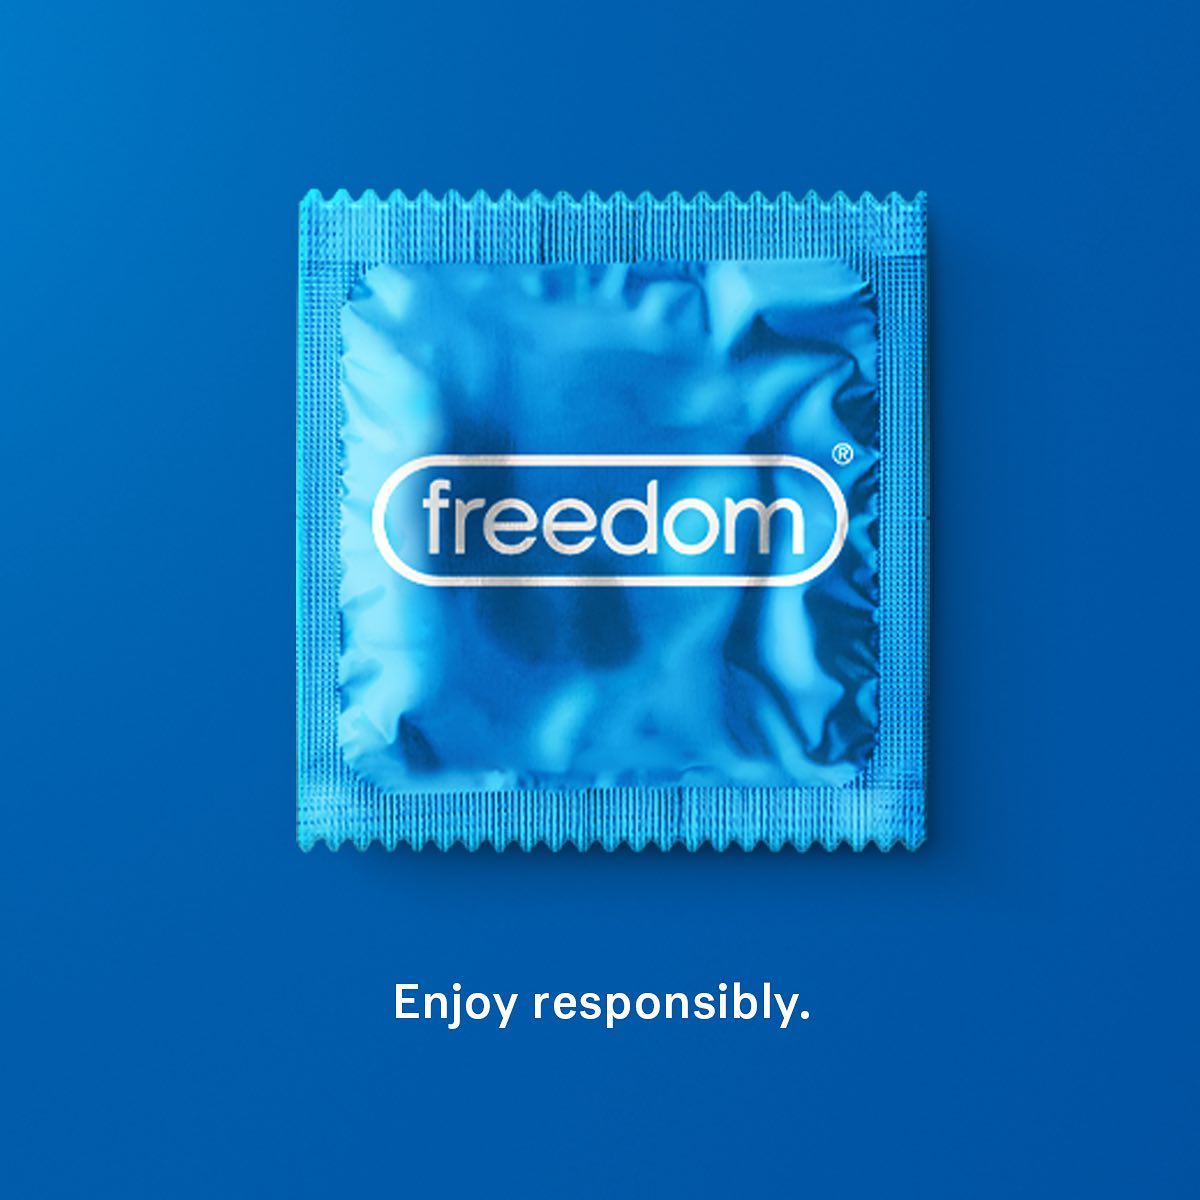 Durex UK Freedom Day AD